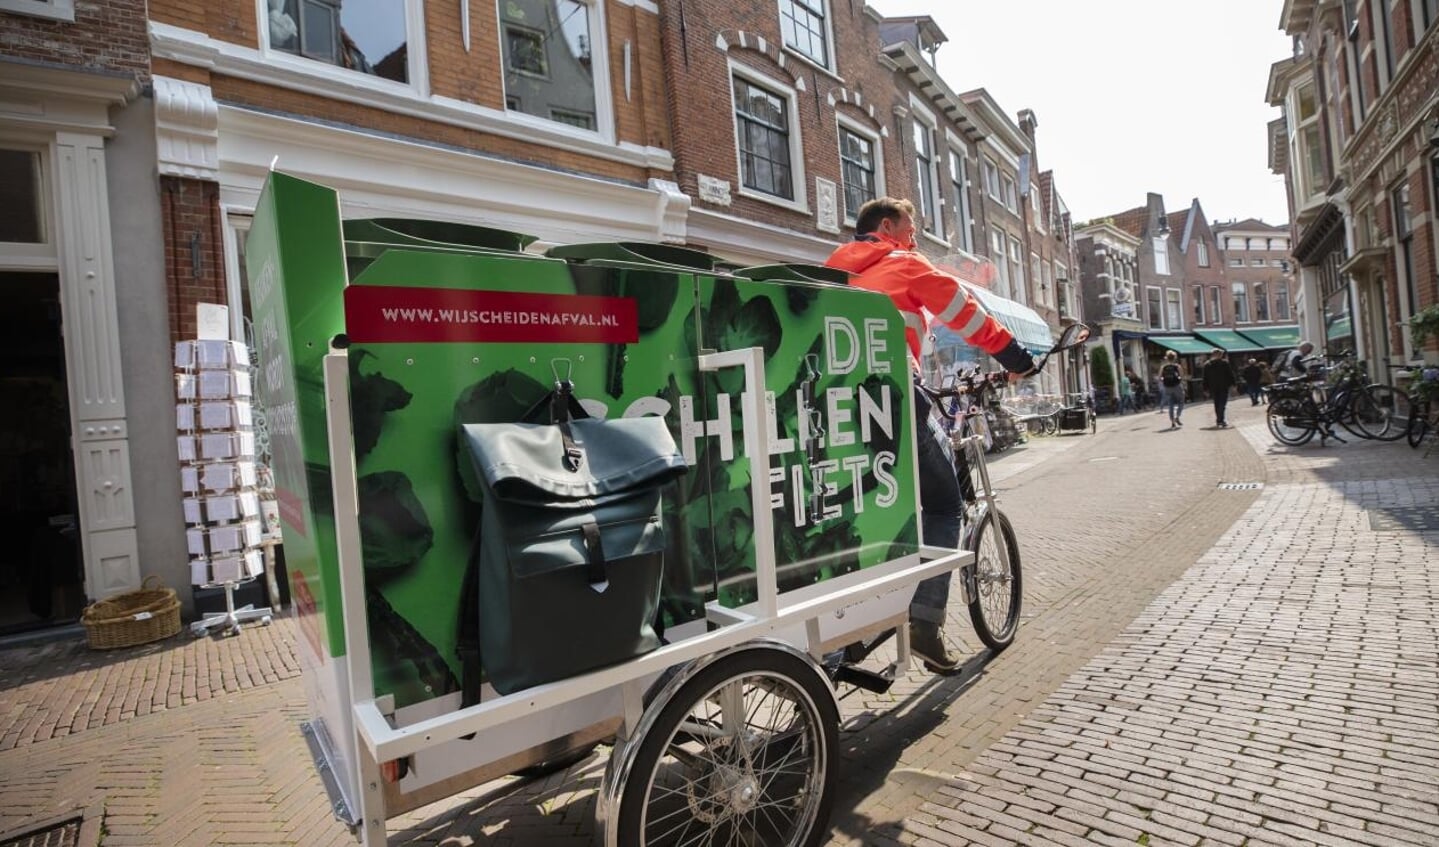 Dee schillenboer komt op de fiets in het centrum van Haarlem.